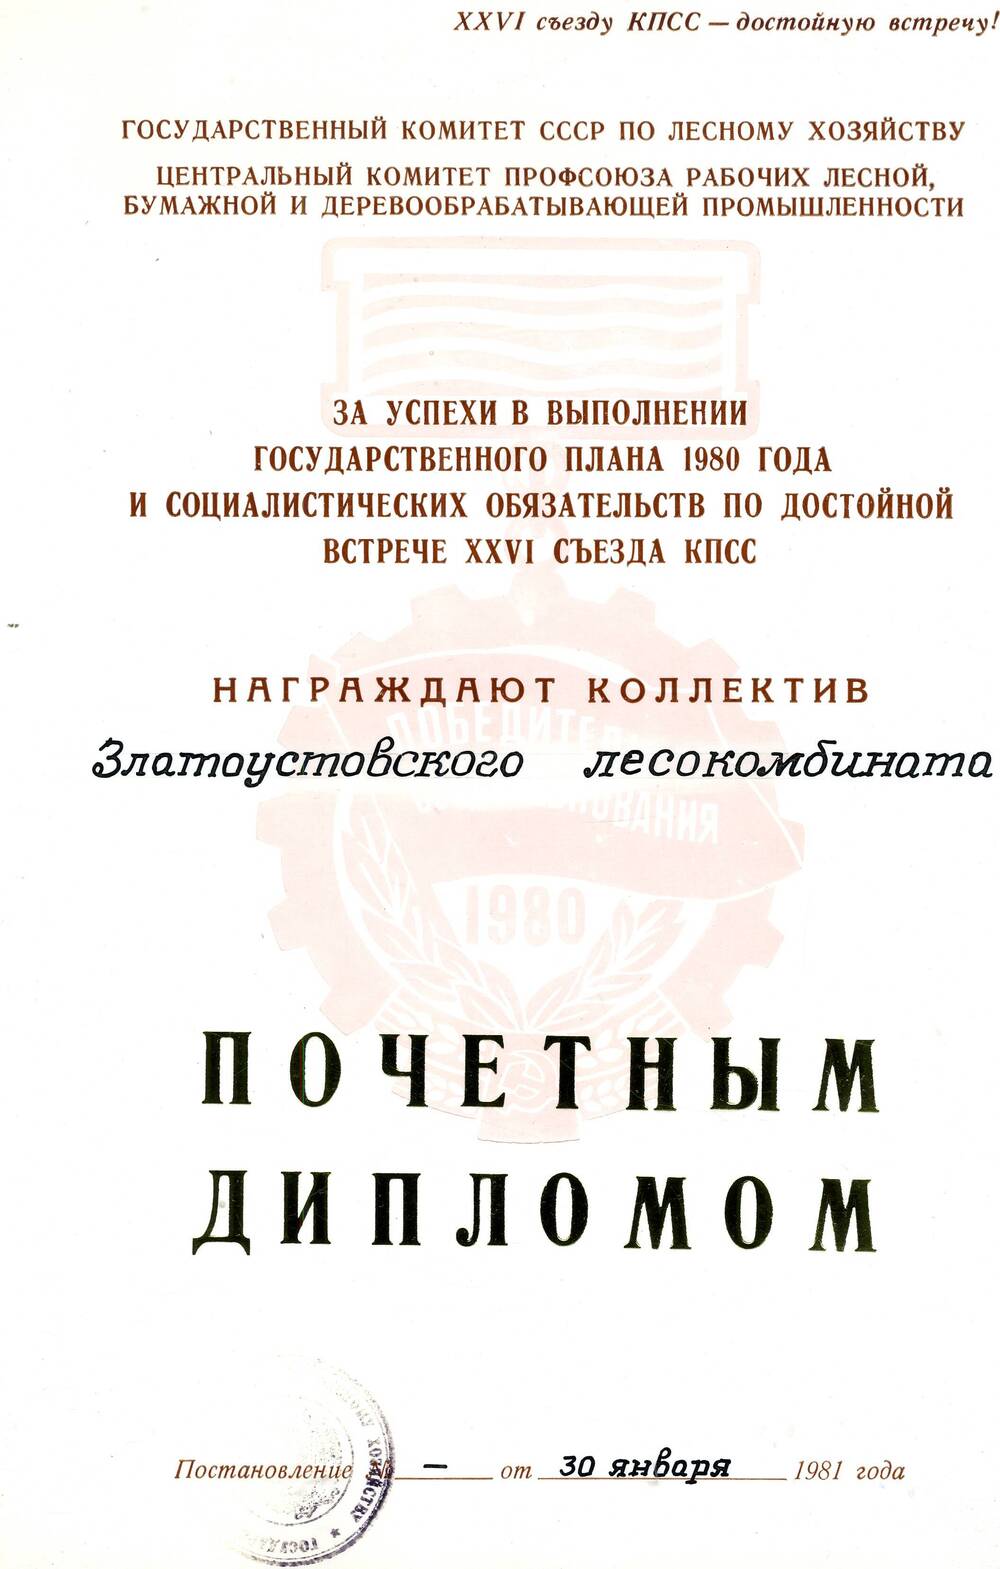 Почетный диплом Златоустовского лесокомбината за успехи в выполнении государственного плана 1980 г.